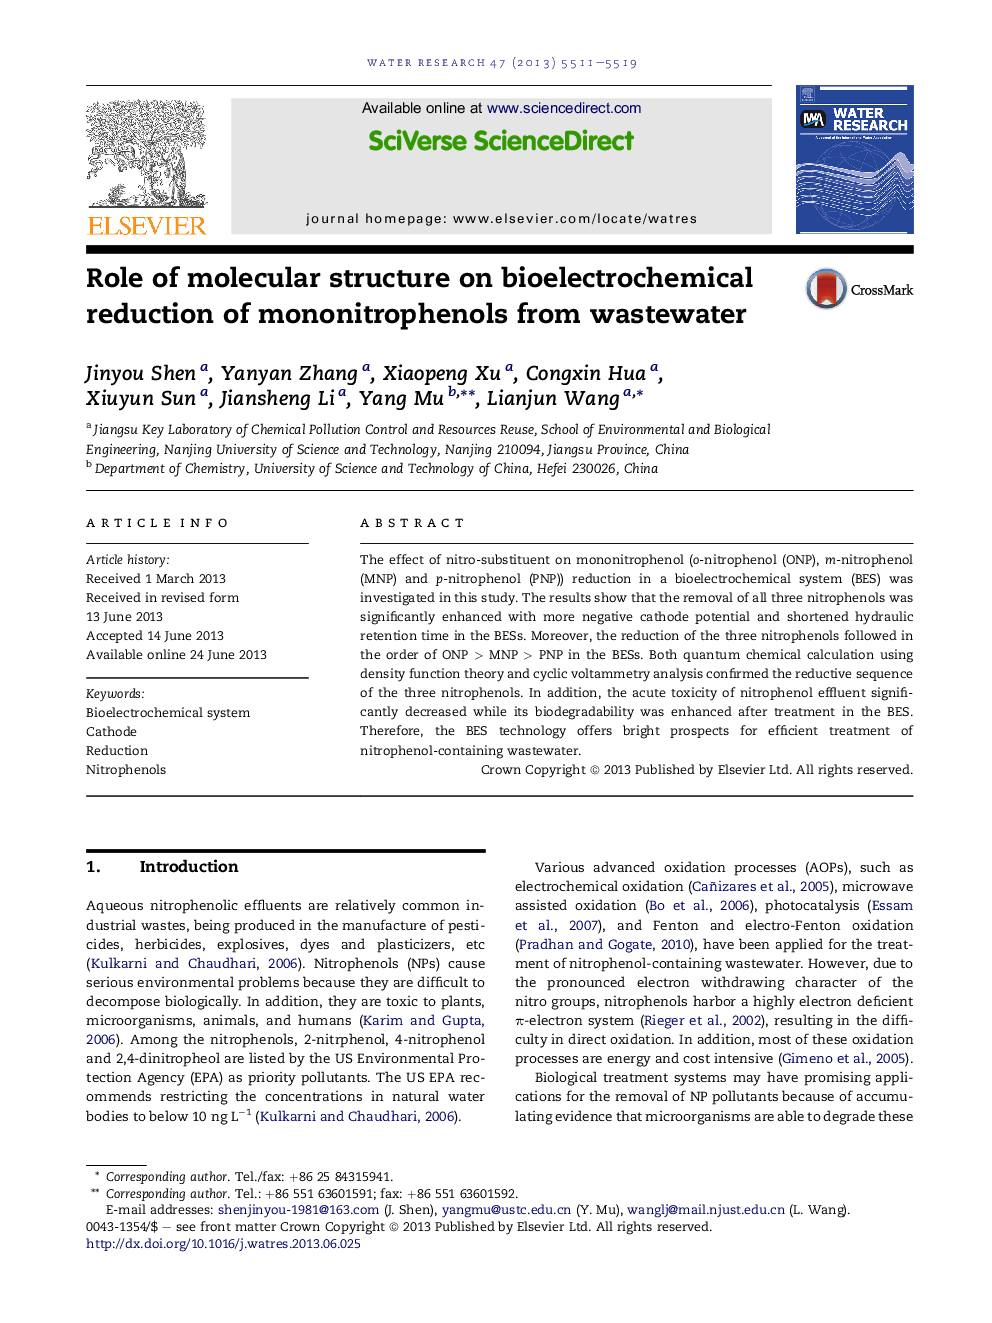 نقش ساختار مولکولی بر کاهش بیو الکتروشیمیایی مونونیتروفنلها از فاضلاب 